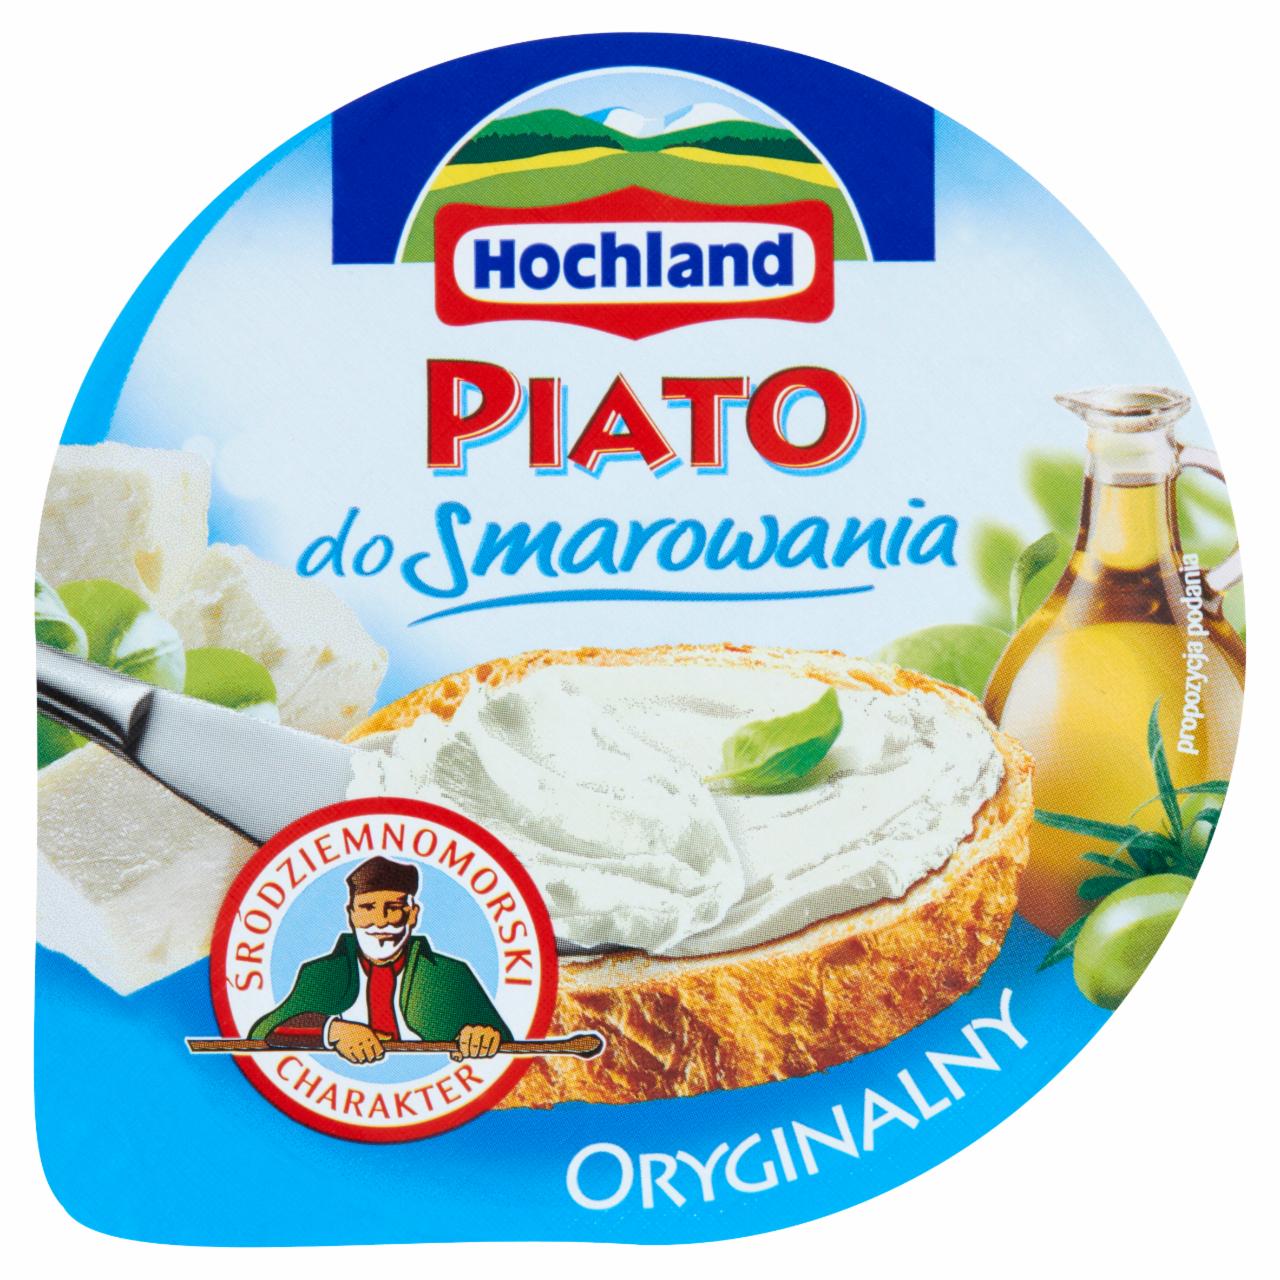 Zdjęcia - Hochland Piato do smarowania oryginalny Ser typu solankowego 150 g